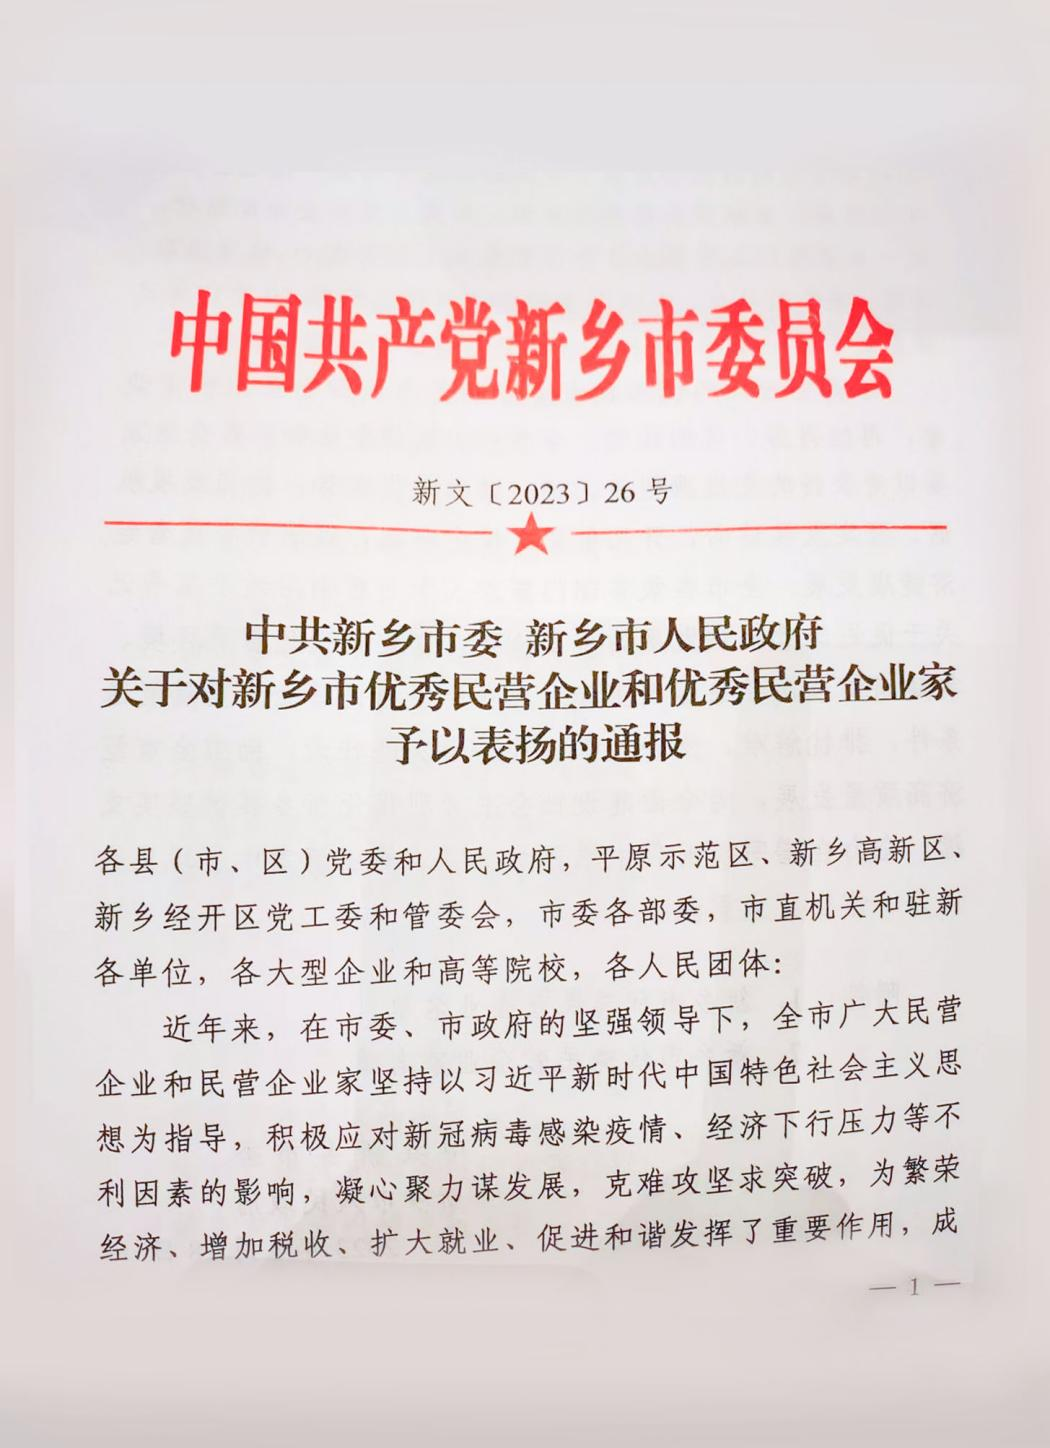 河南中鼎智建科技有限公司荣获新乡市2022年度“优秀民营企业”荣誉称号